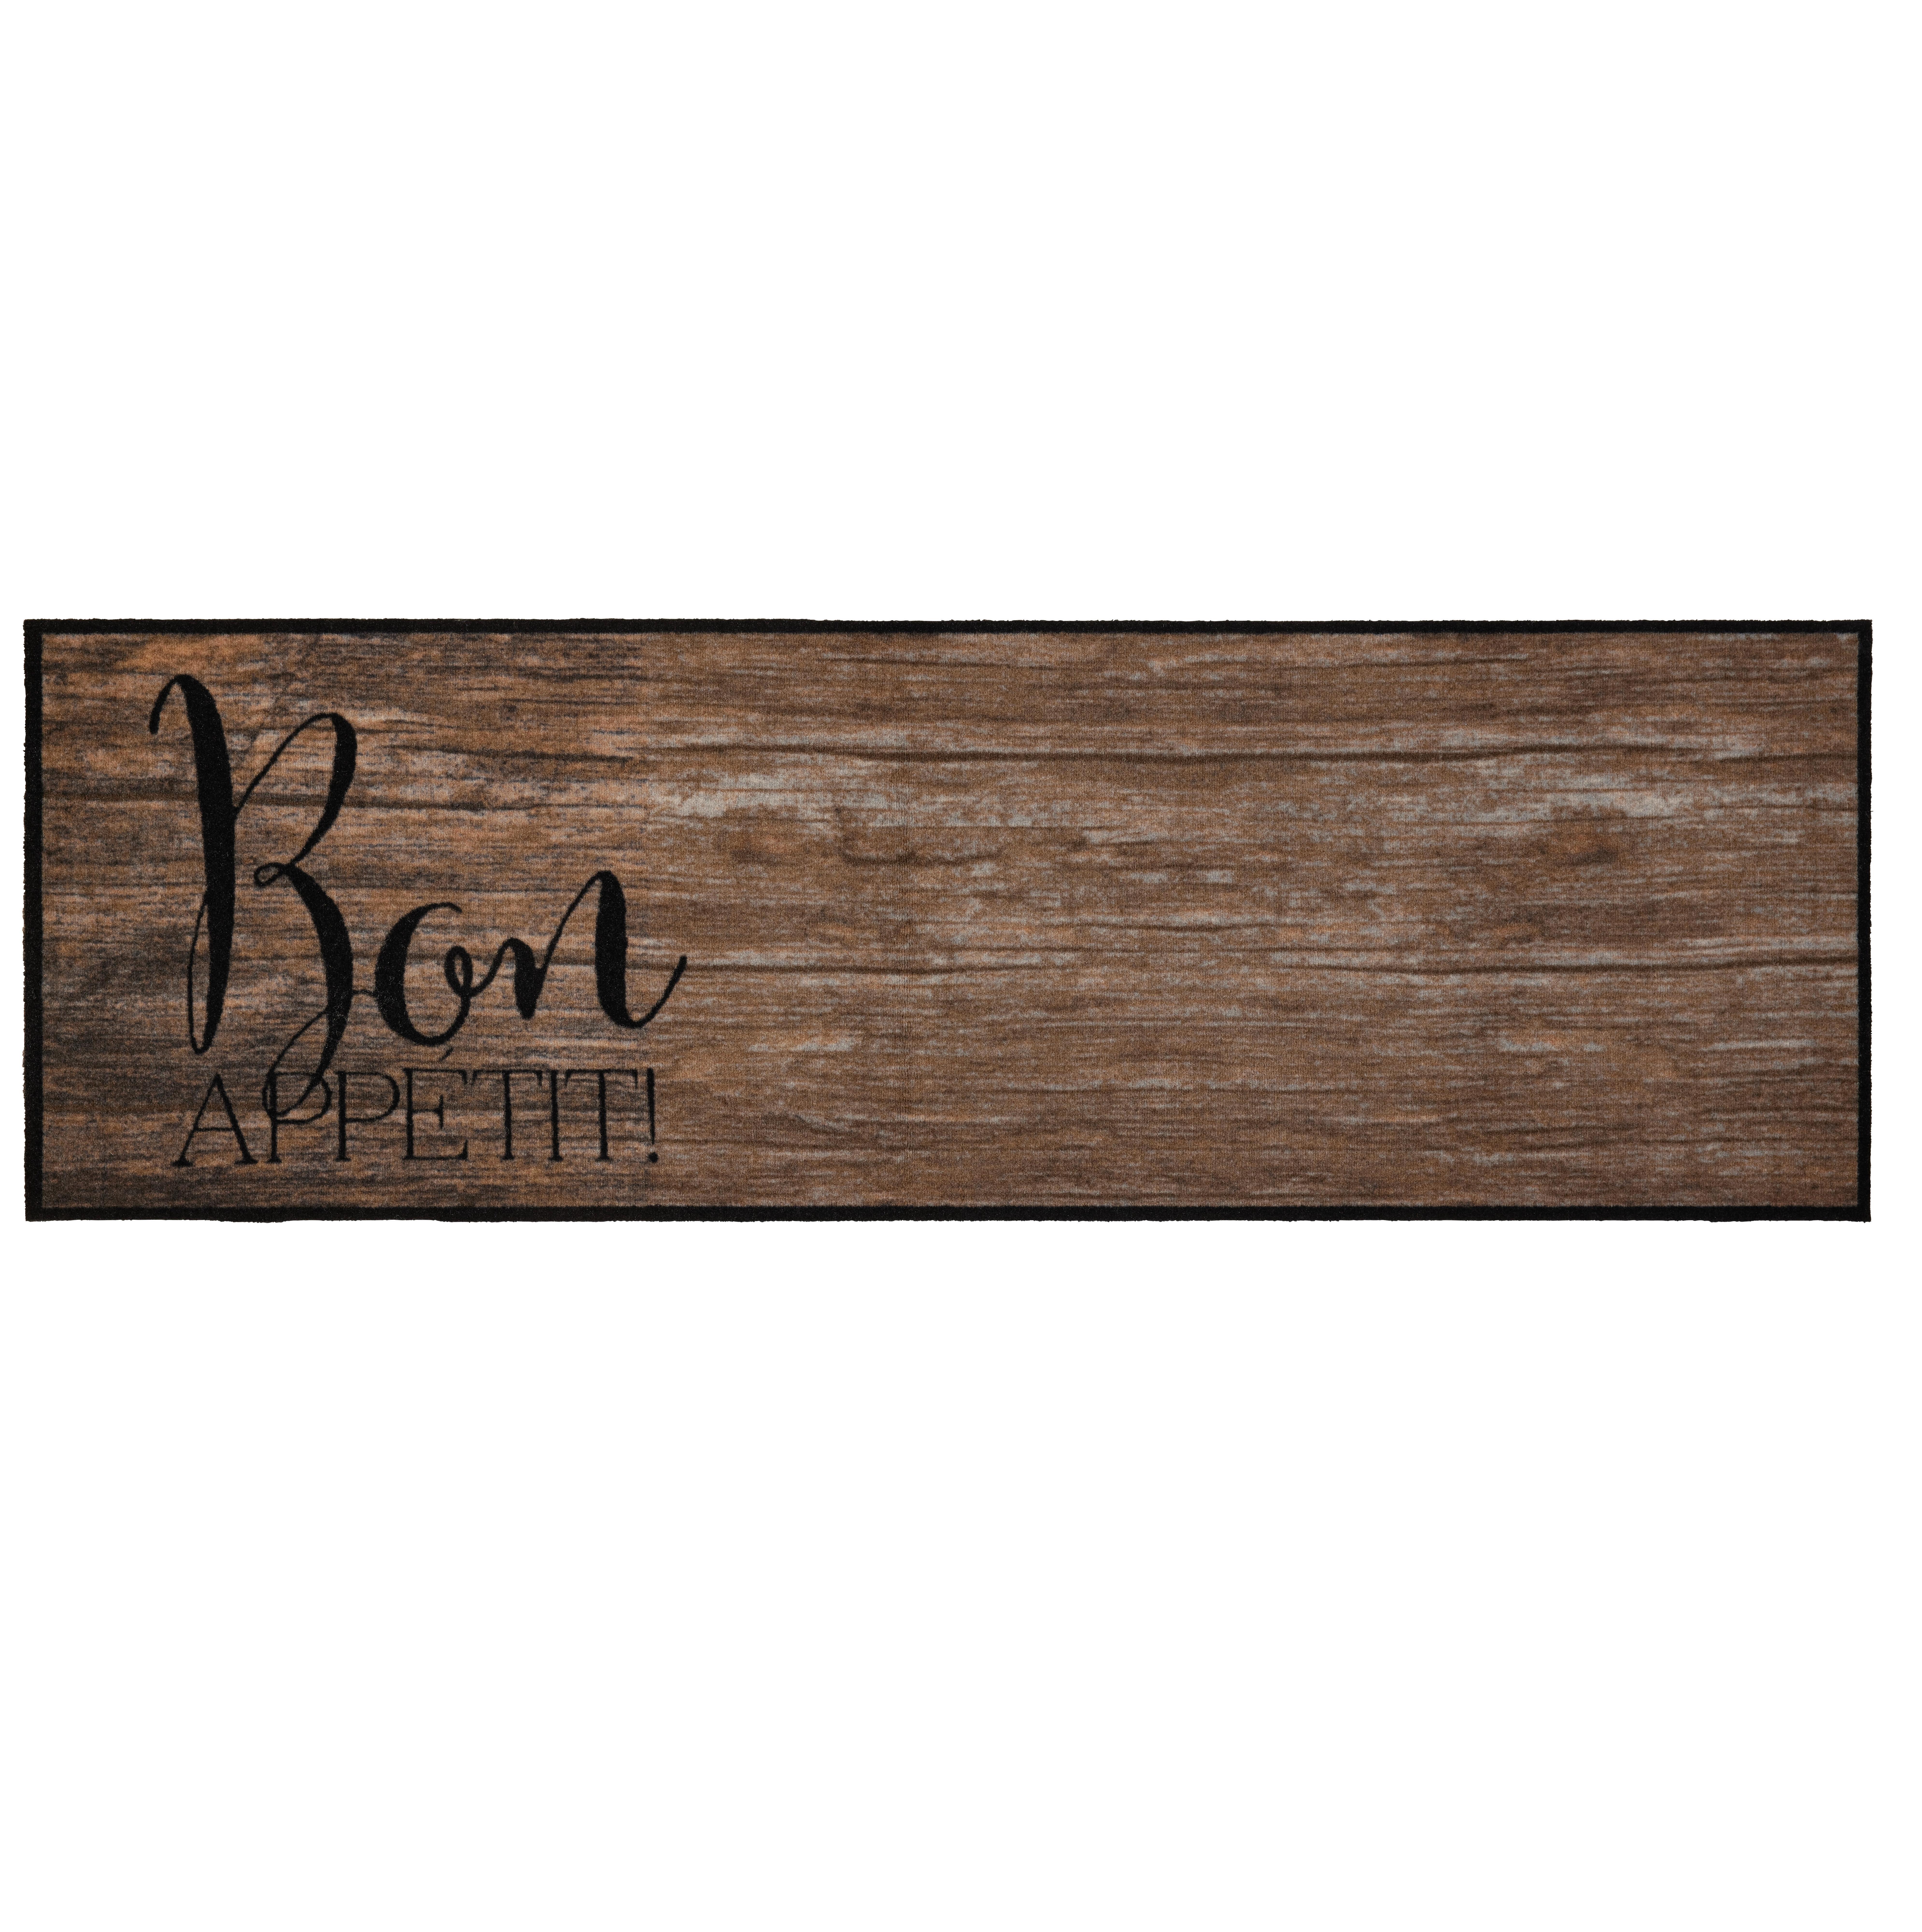 Dveřní Rohožka Bon Appetit, 50/150cm - šedohnědá, Moderní, textil (50/150cm) - Modern Living